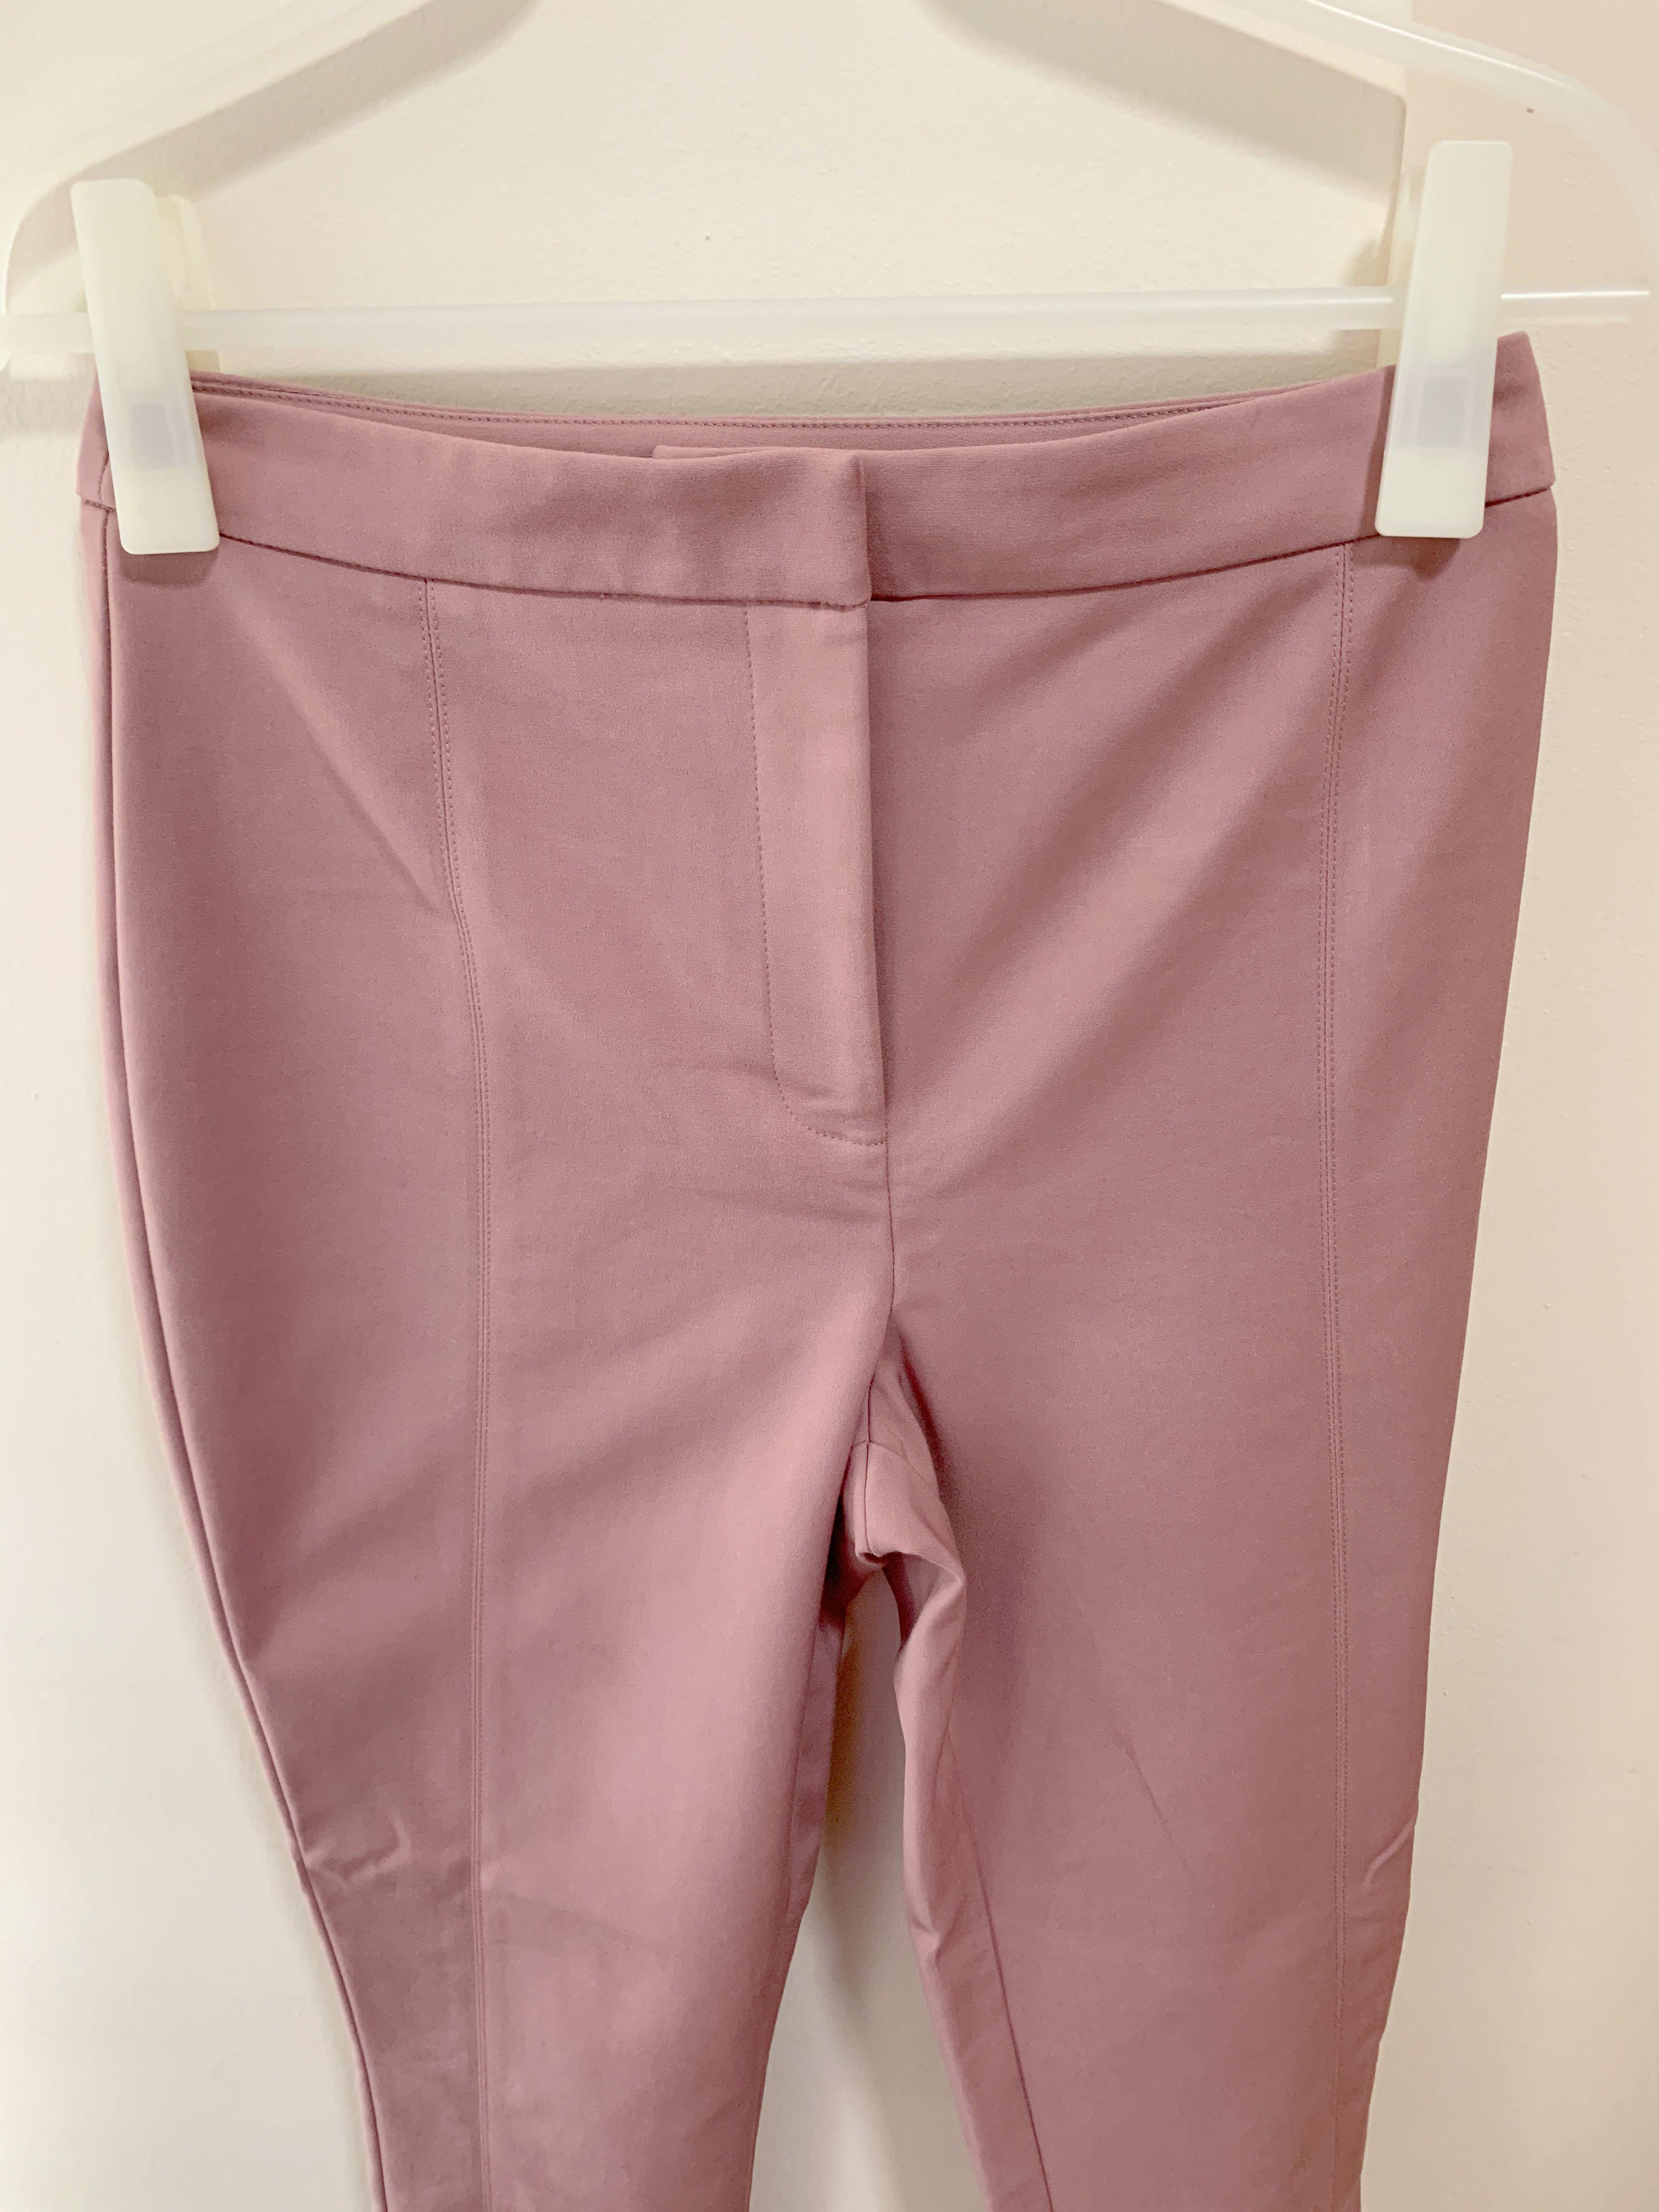 Buy Georgia High Waist Full Length Pants - Forever New